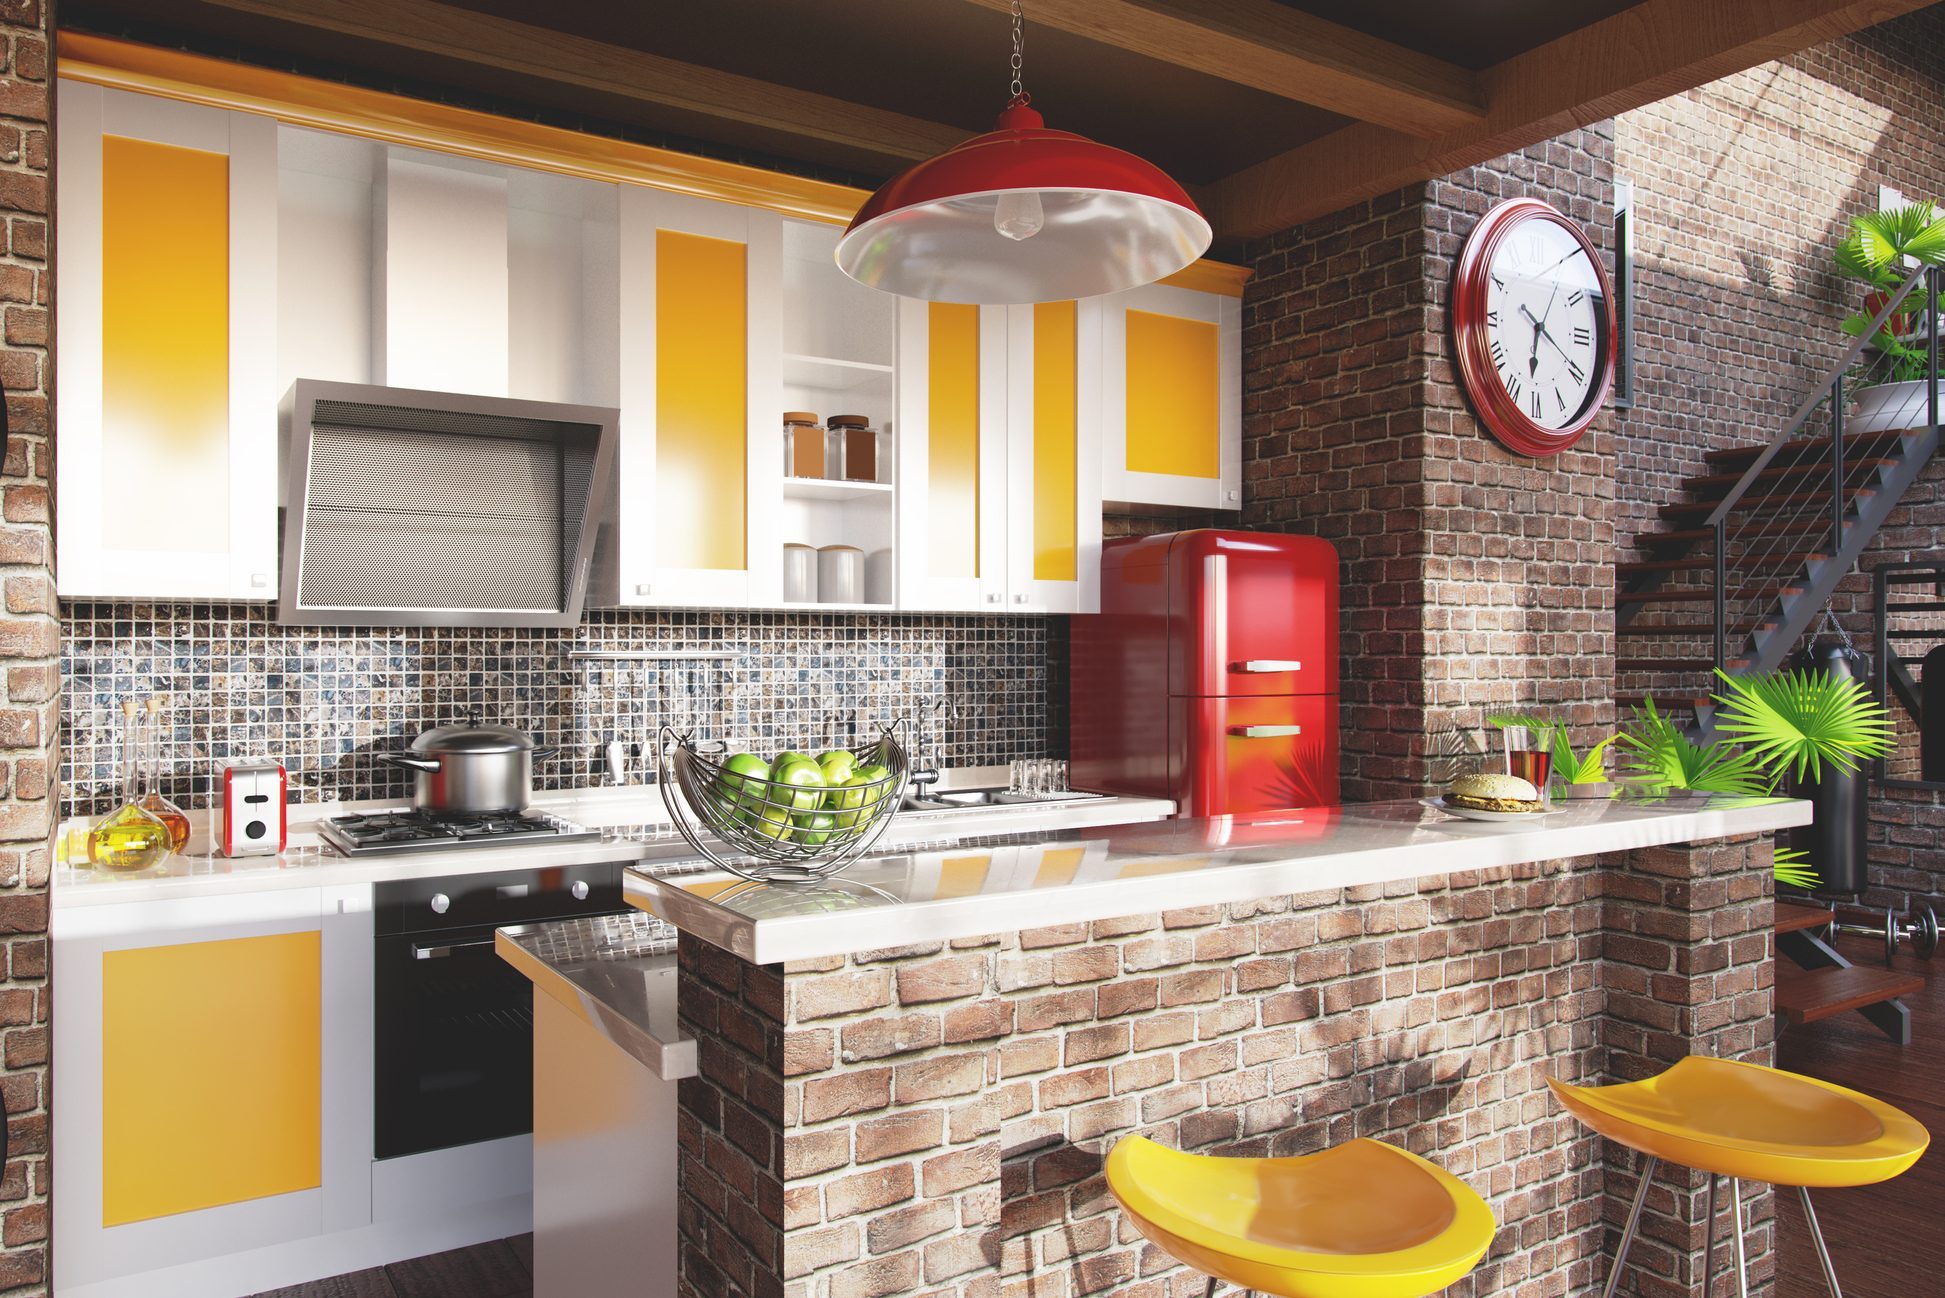 Loft kitchen concept